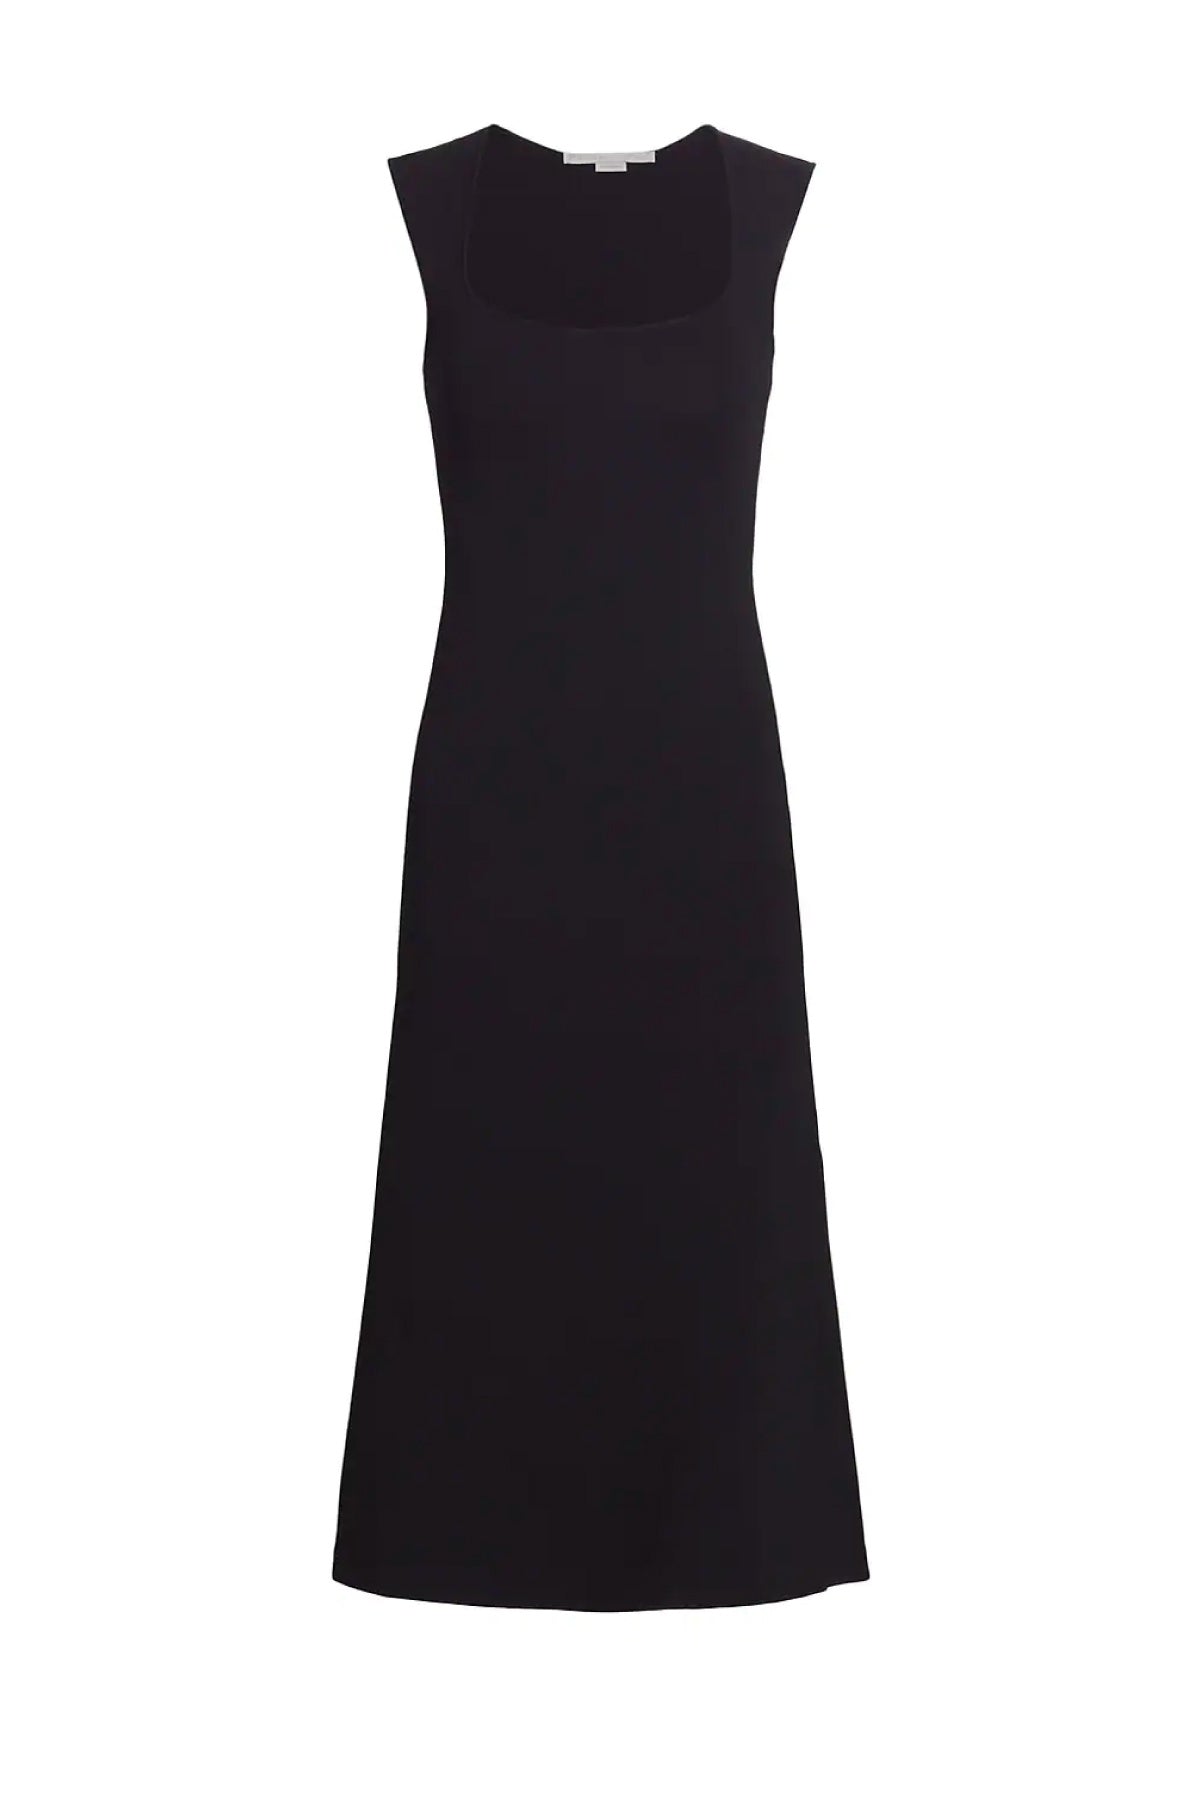 Stella McCartney Sleeveless Compact Knit Midi Dress - Black